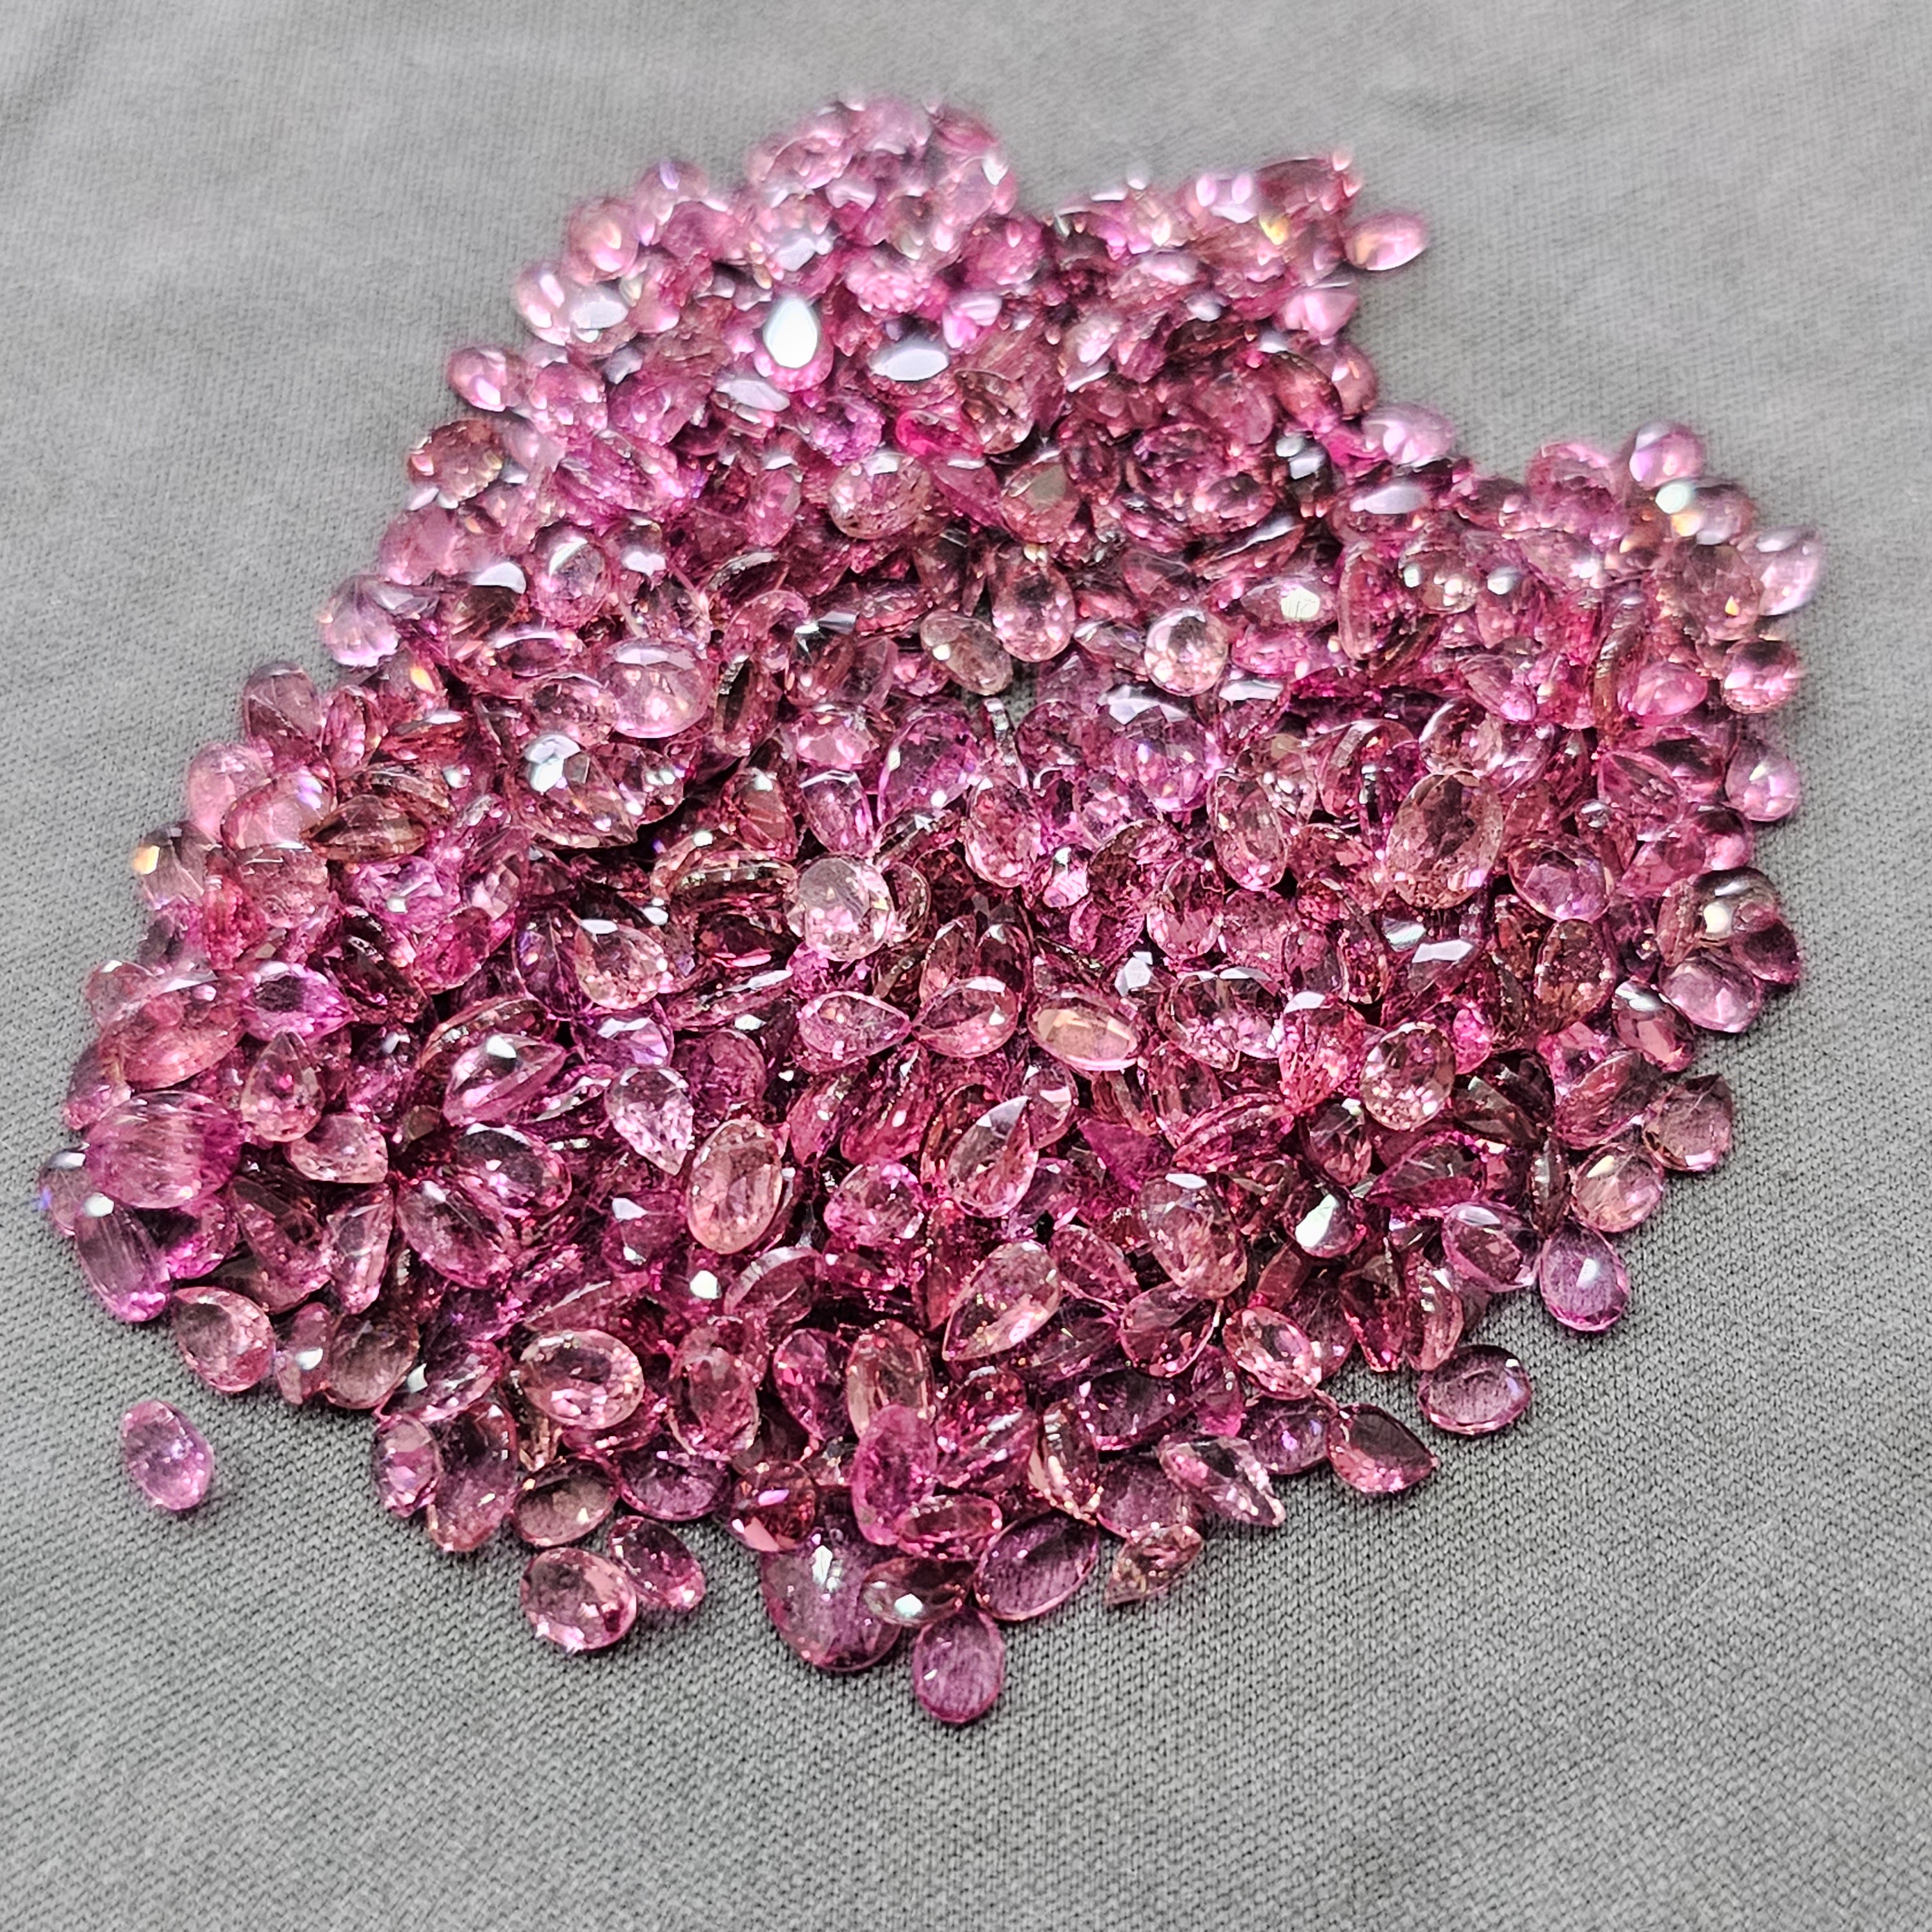 20 Pcs Pink Tourmaline | Rubellite | 3mm to 6mm Sizes - The LabradoriteKing